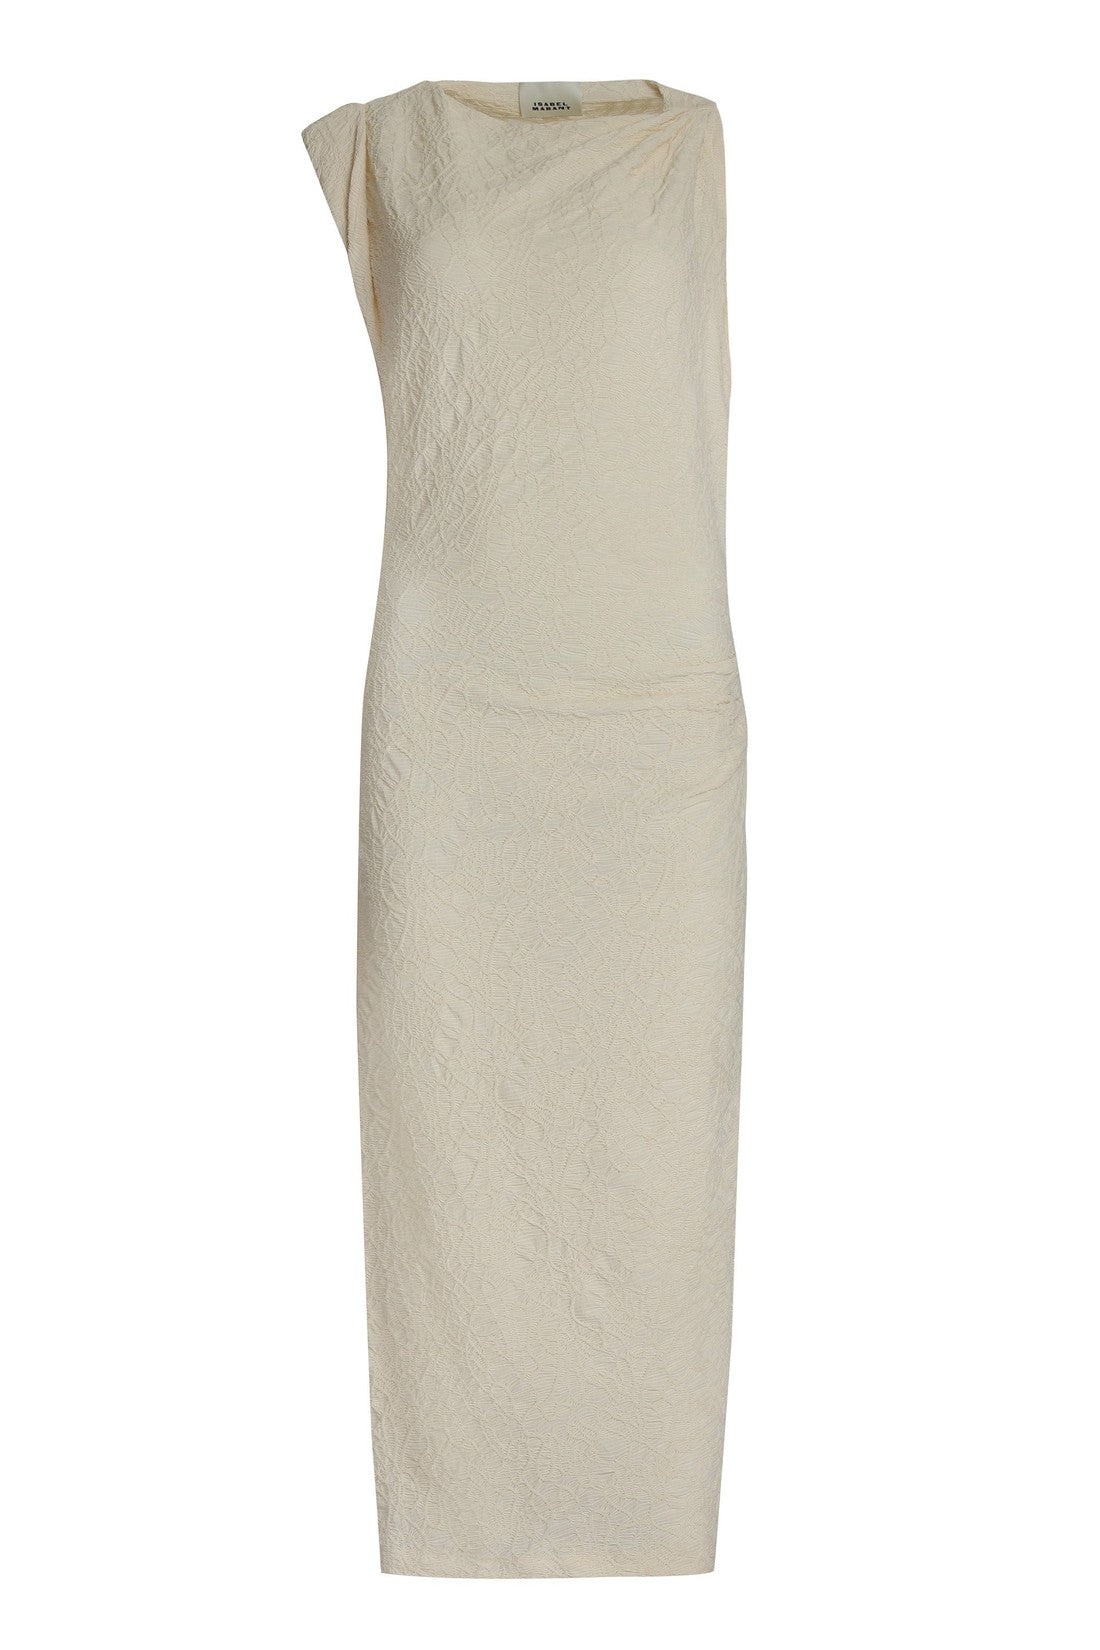 Isabel Marant-OUTLET-SALE-Franzy Cotton-blend dress-ARCHIVIST